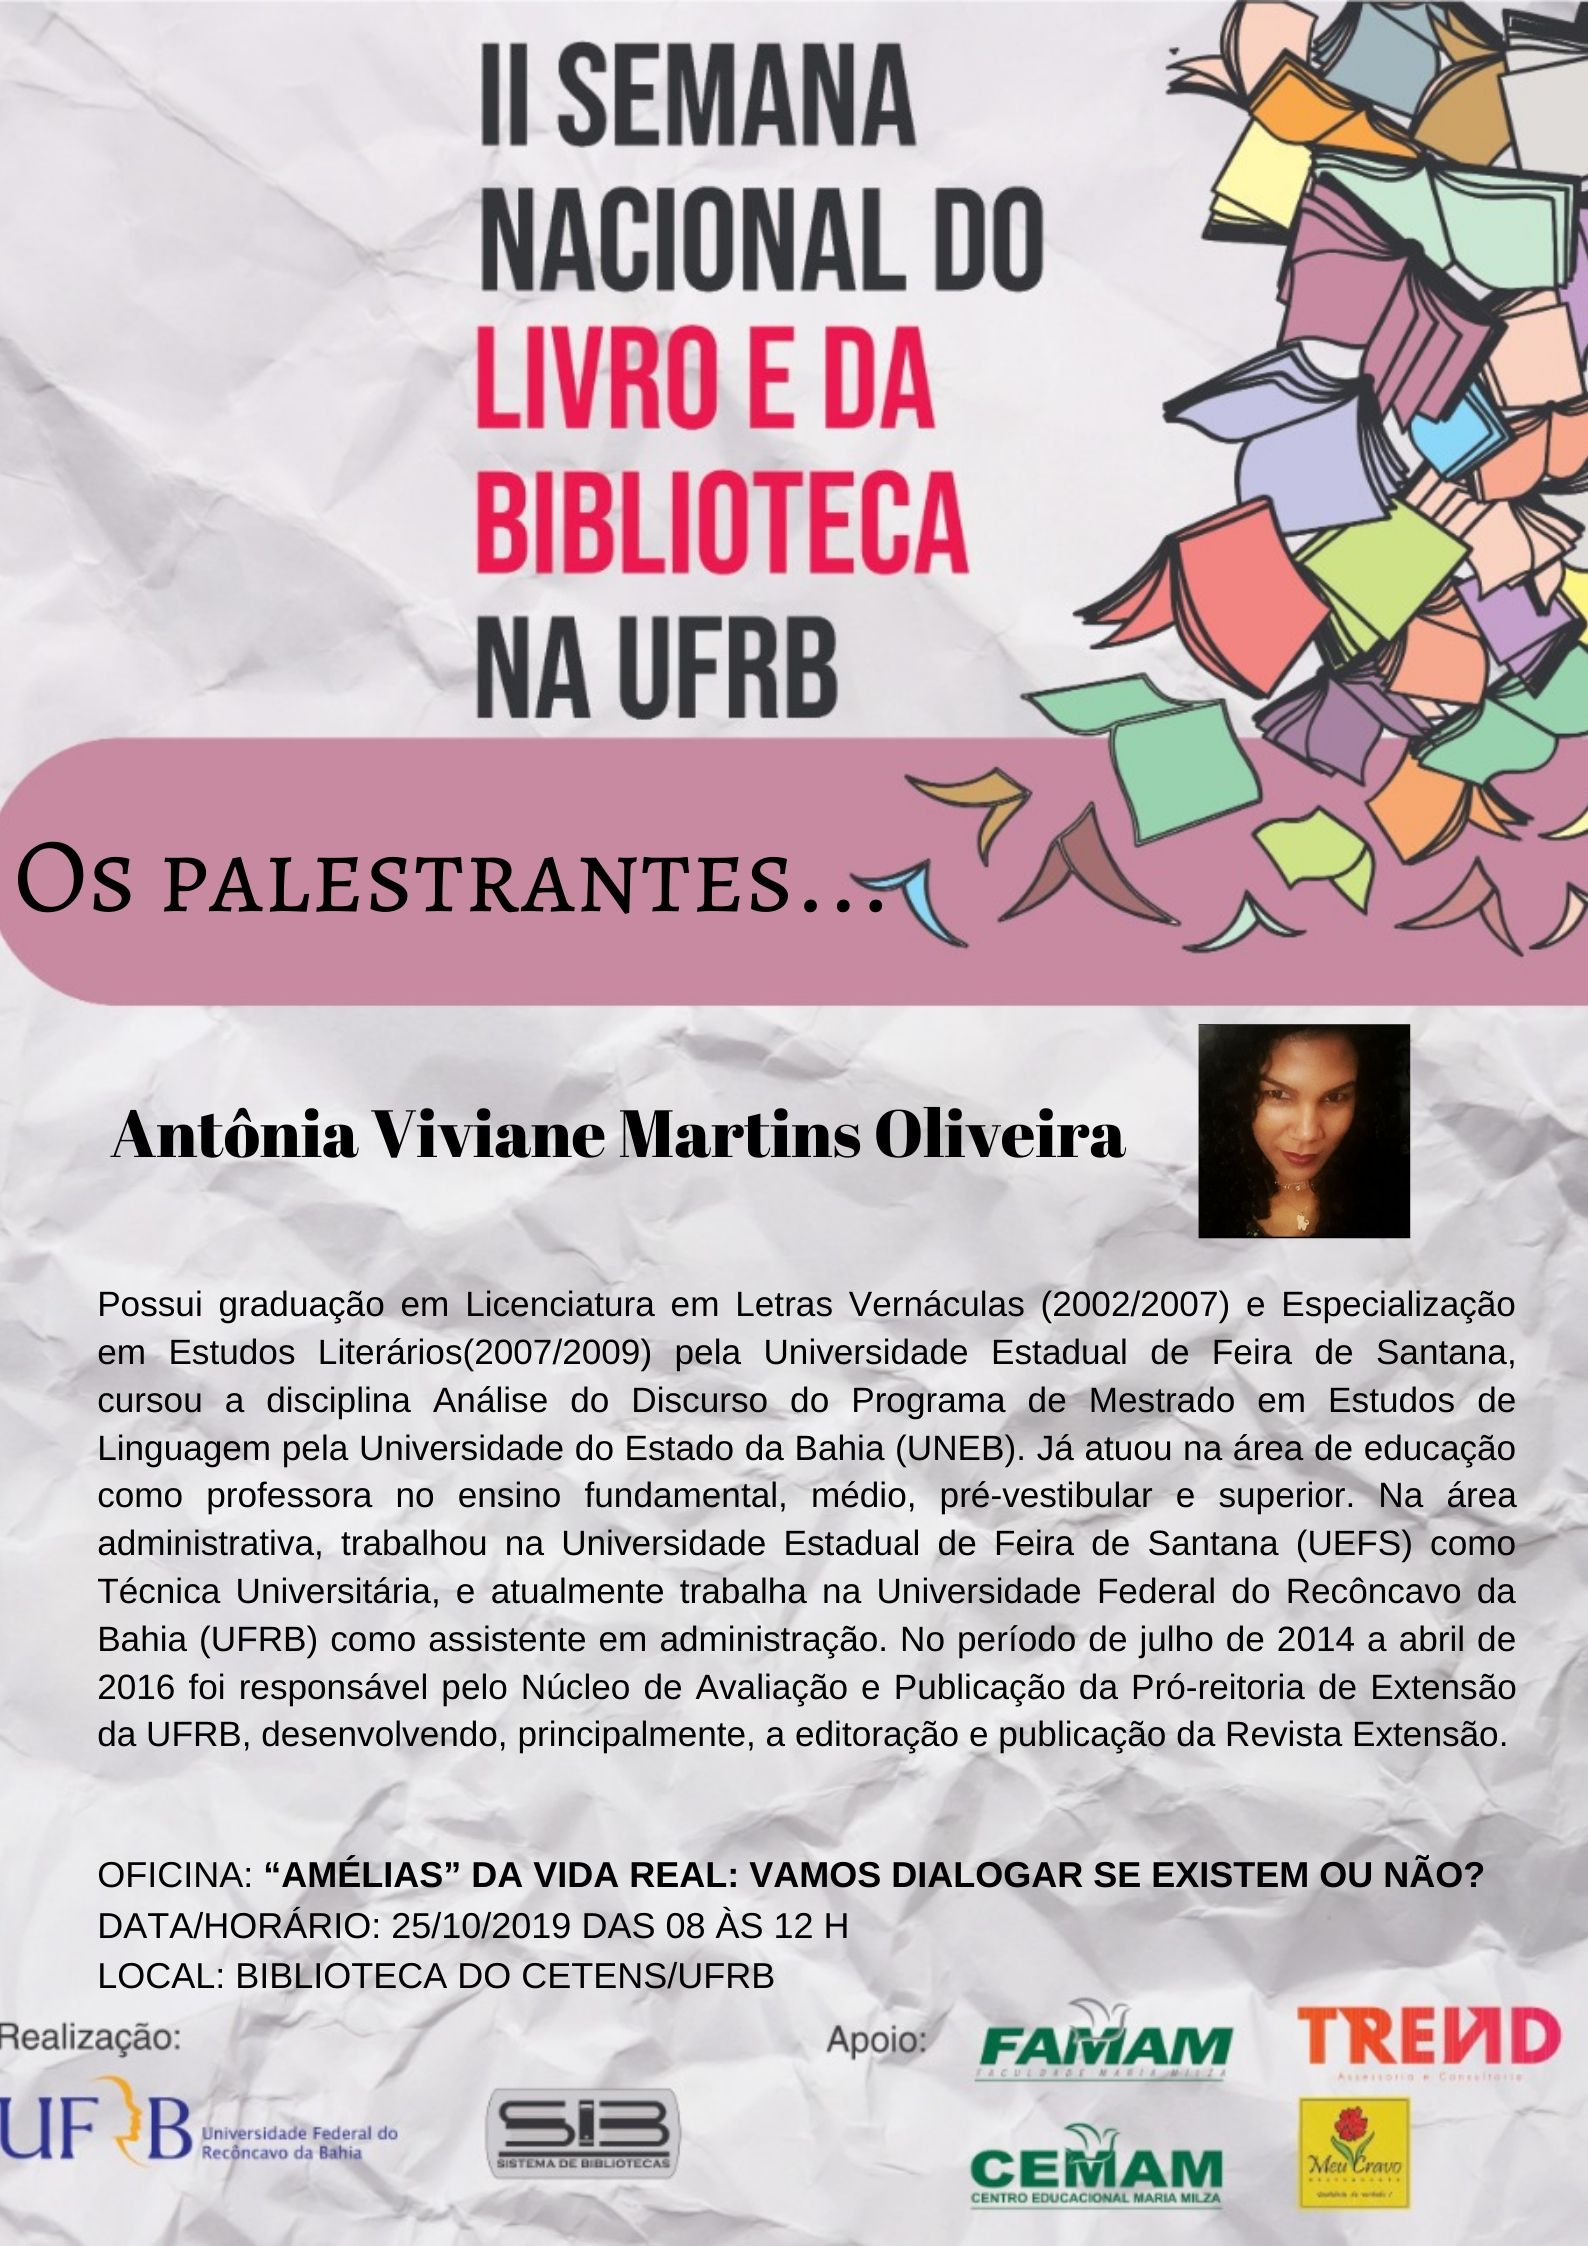 Antonia Vivane Martins